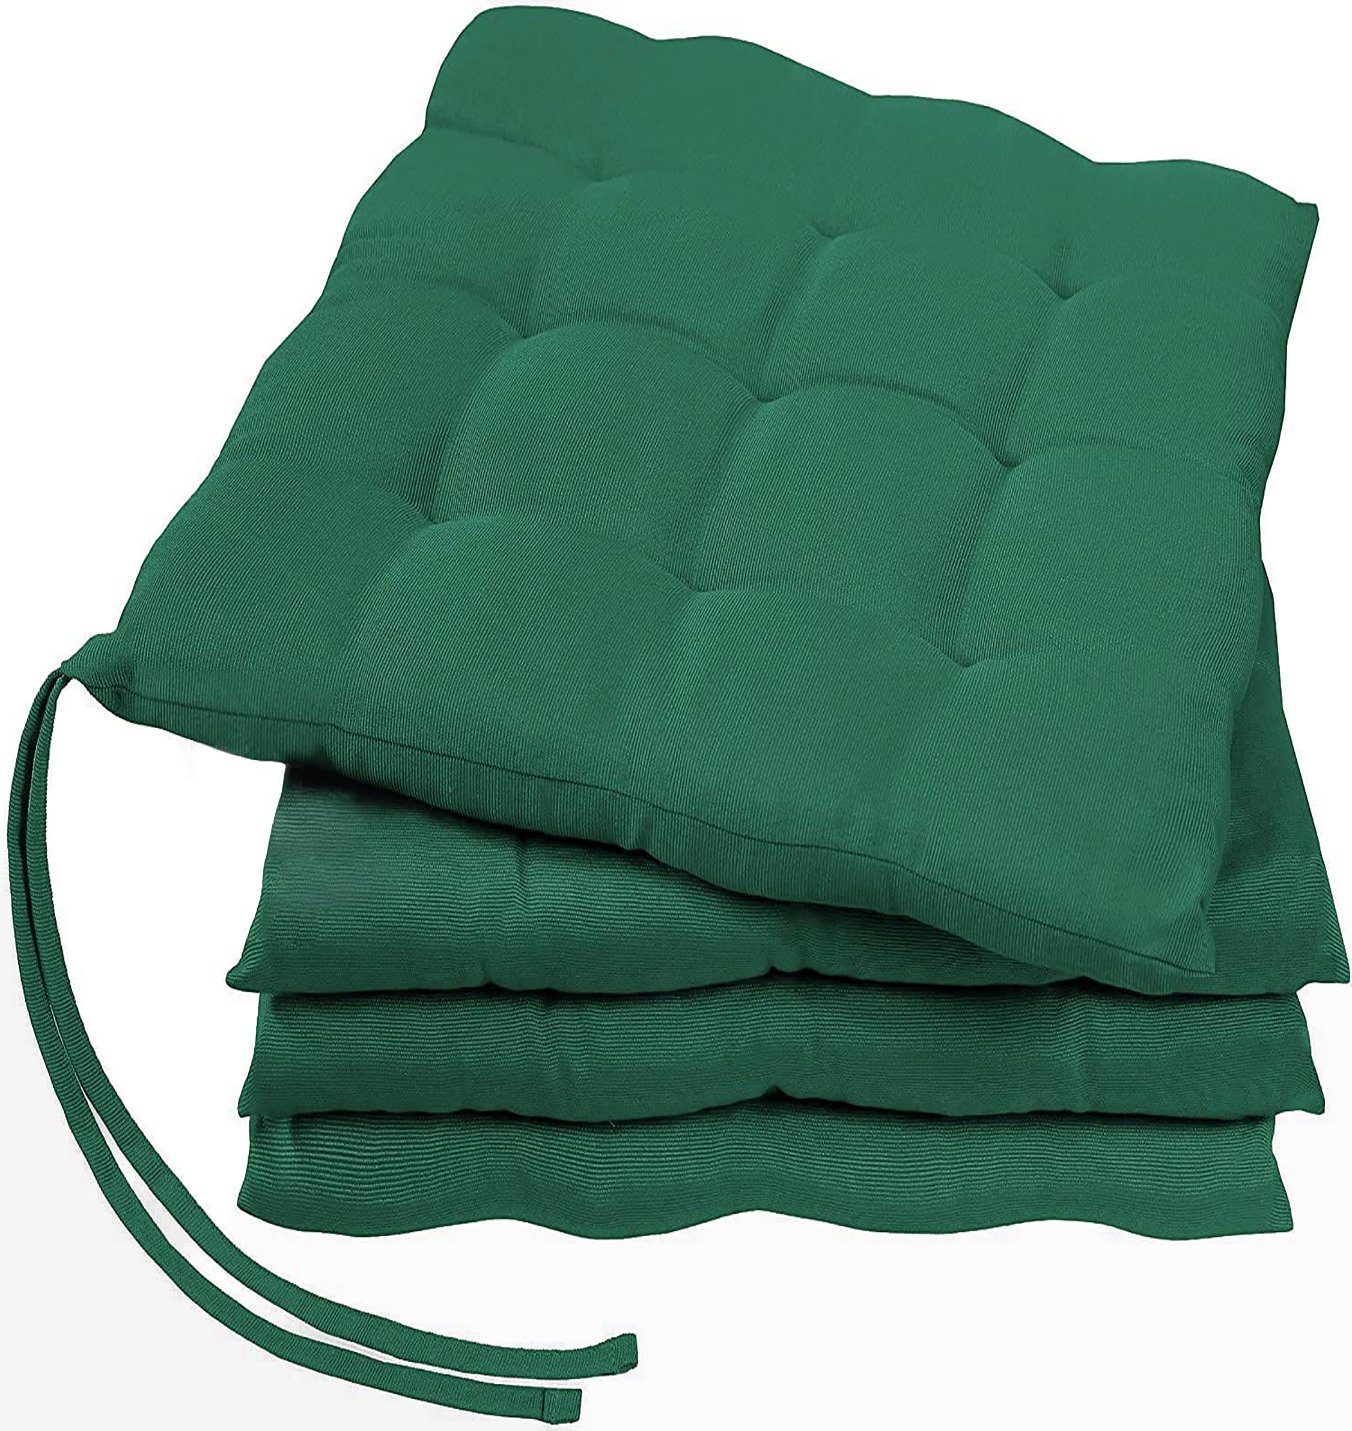 GREEN MARK Textilien Sitzkissen Sitzkissen, Stuhlkissen für Außen oder Innen, weich gefüllt, 40x40cm Dunkel grün